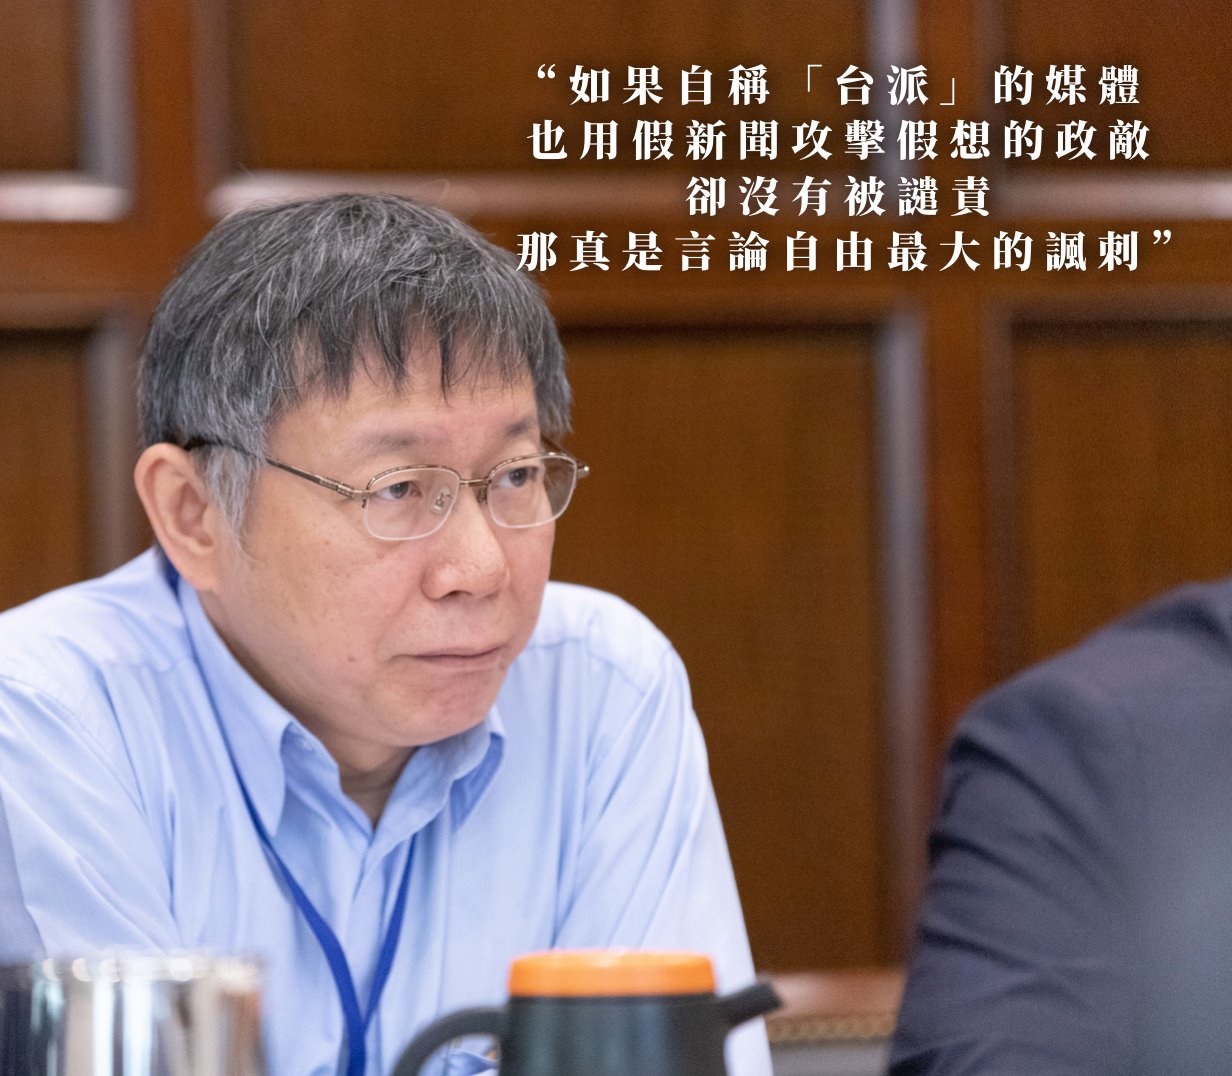 Re: [新聞]柯文哲:去選還是有贏的機會 只是對台灣好 - 八卦 | PTT Web